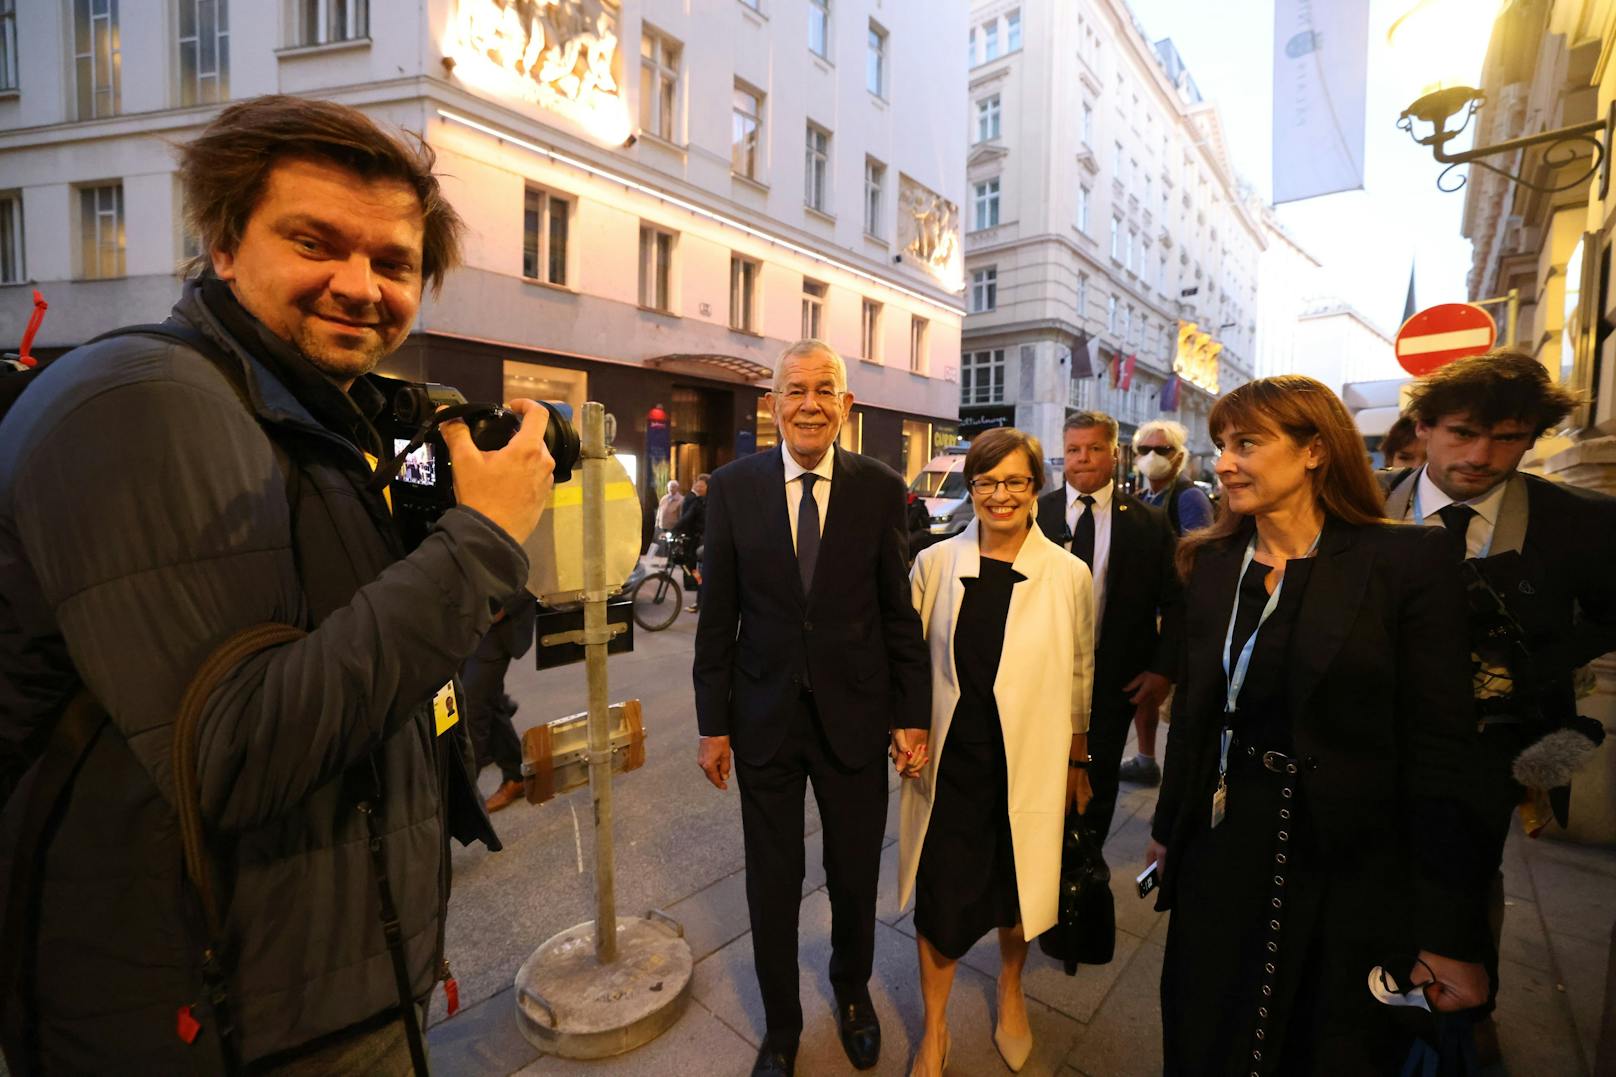 Der Bundespräsident betritt mit seiner Frau Doris Schmidauer das Medienzentrum.